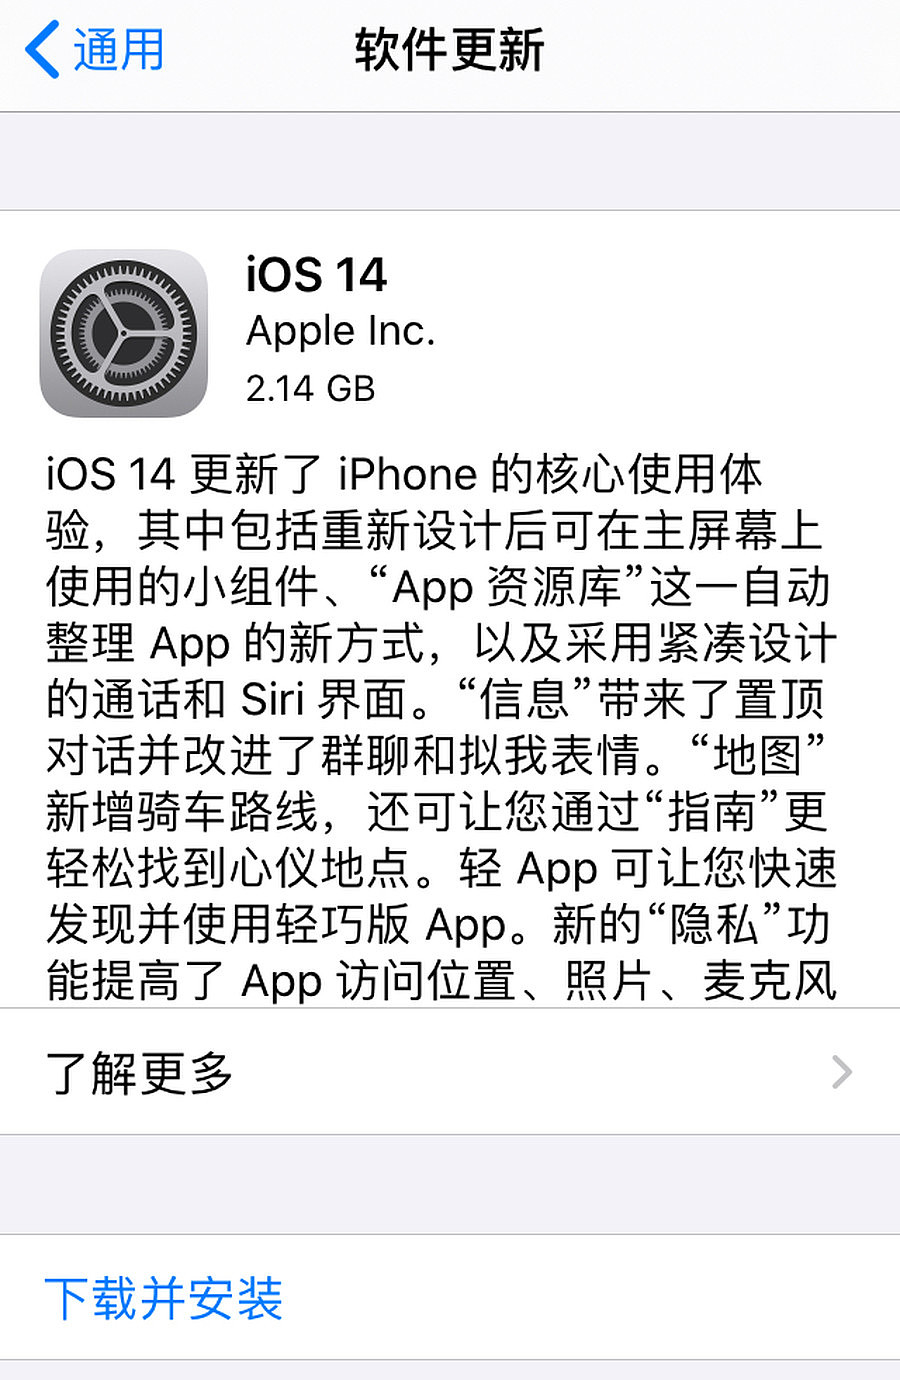 iOS 14正式更新，加入更多内容